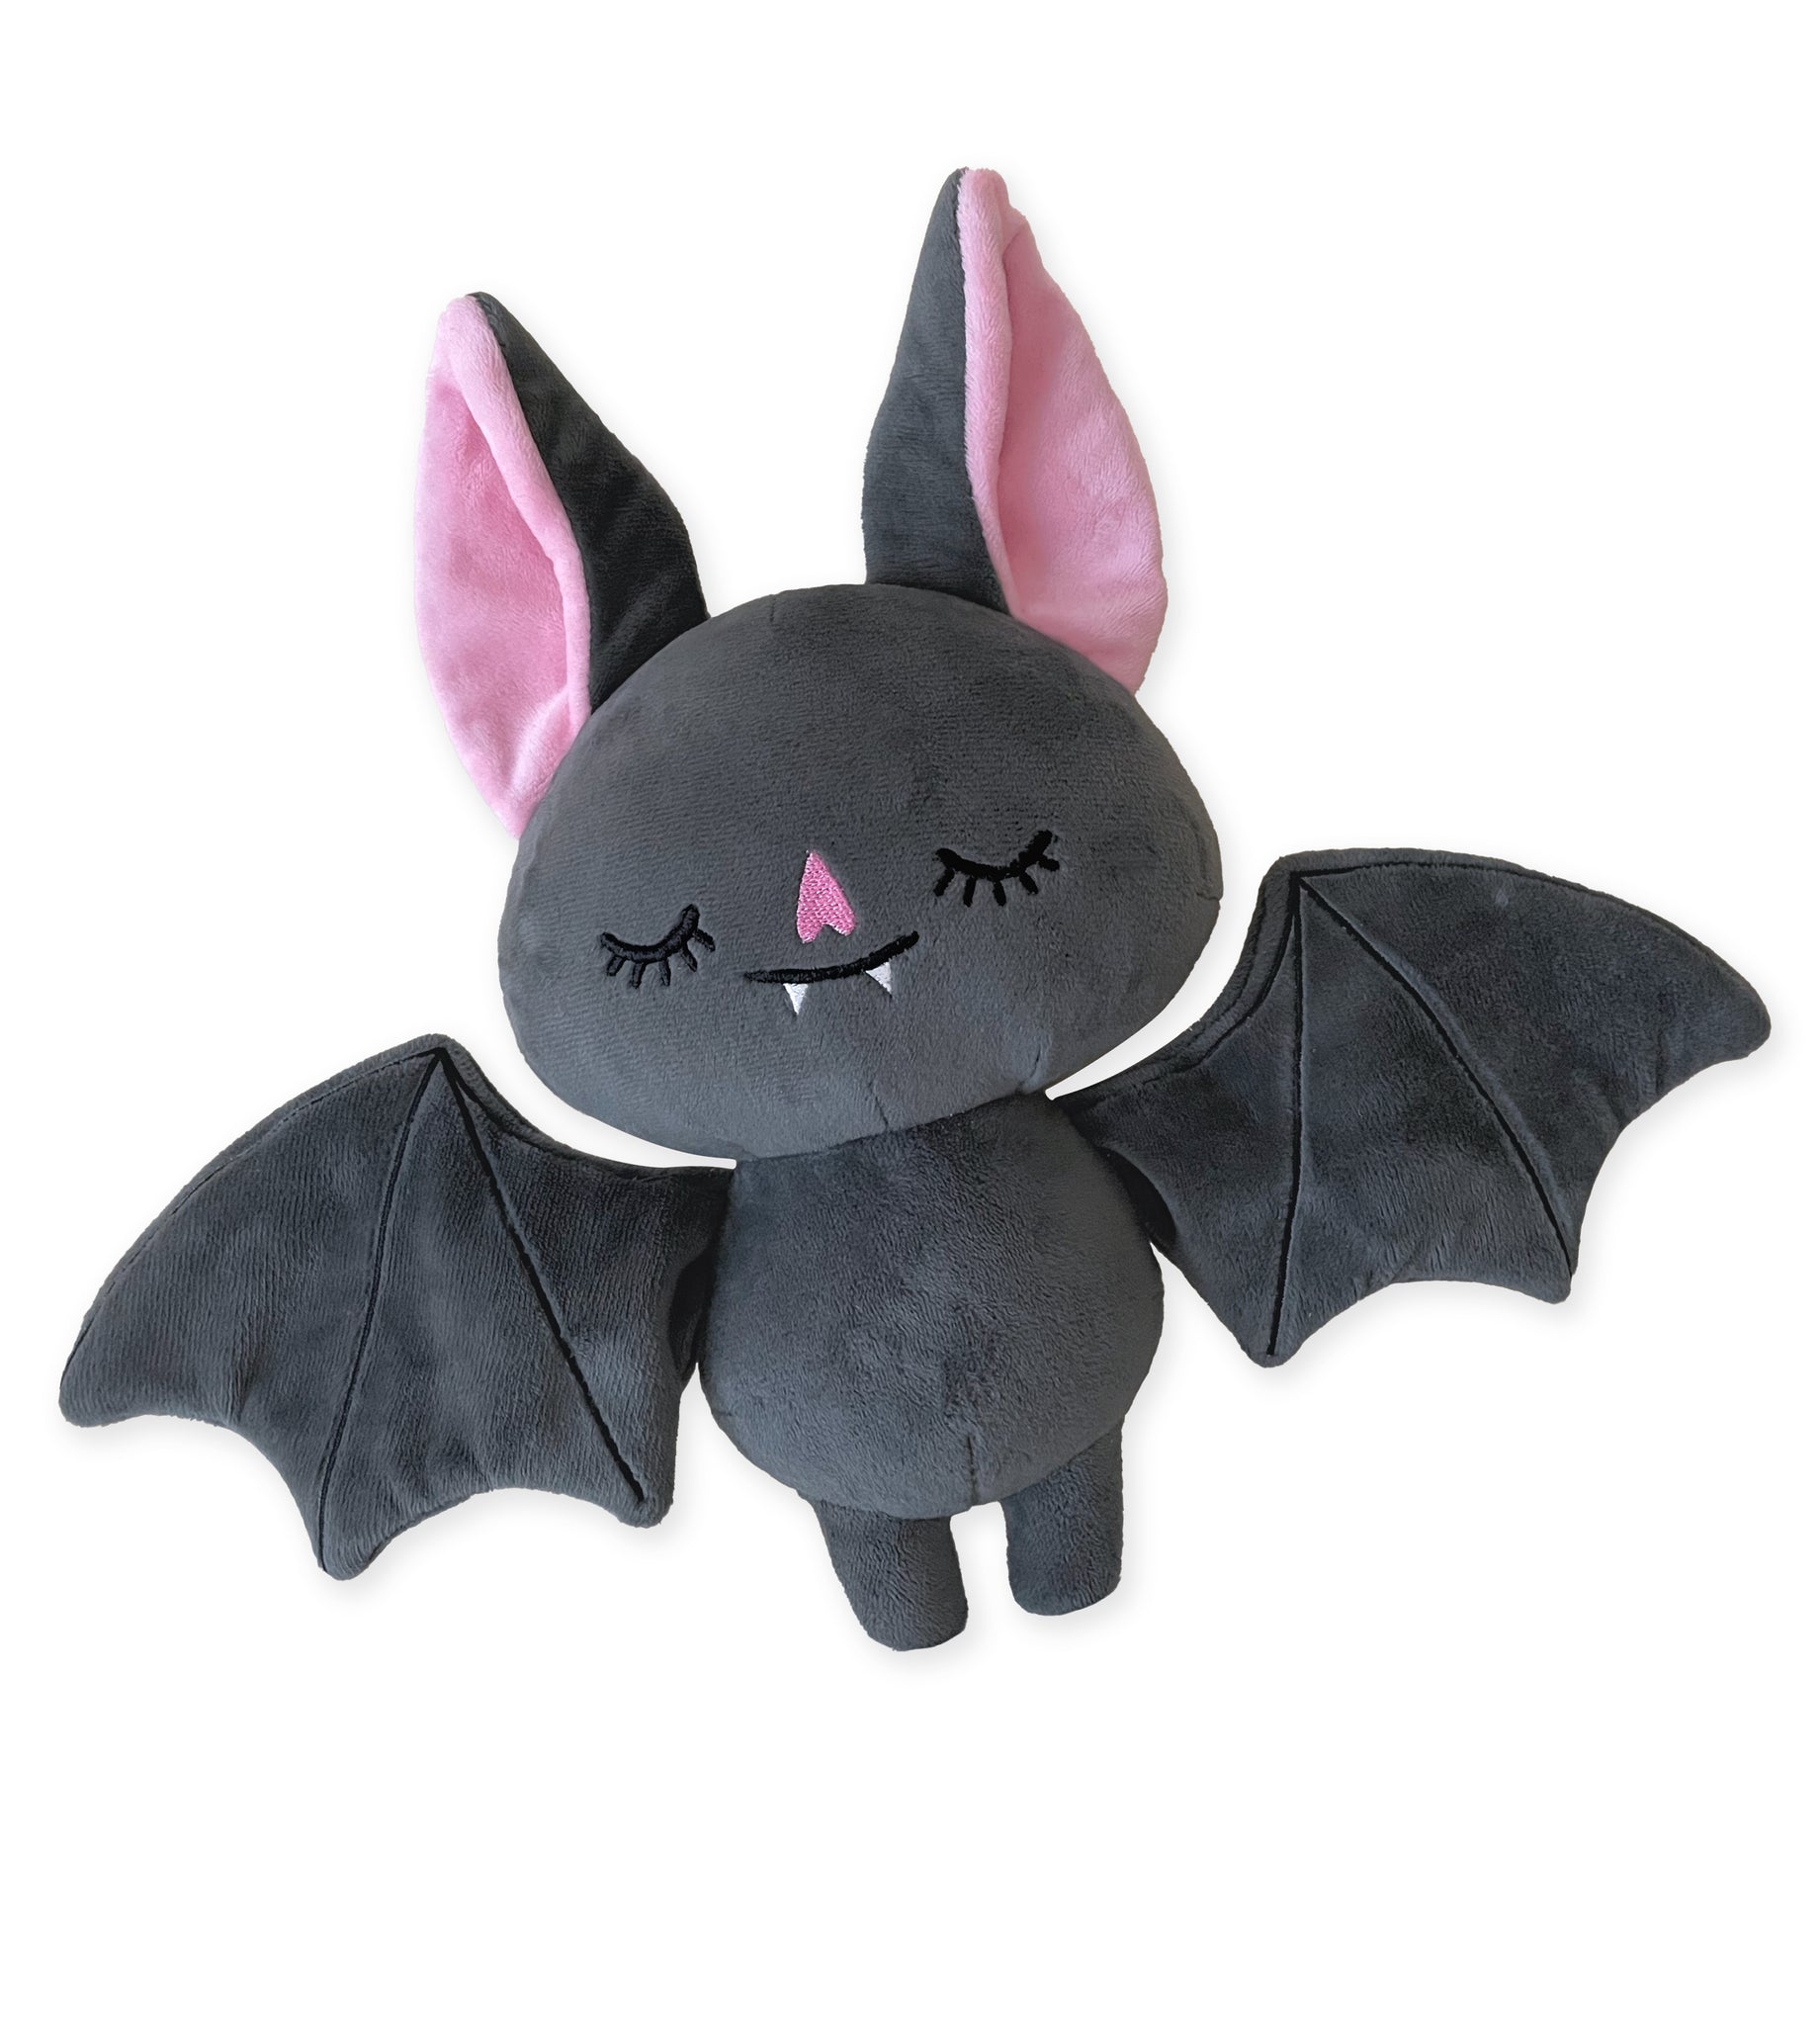 Sleepy Bat Plush